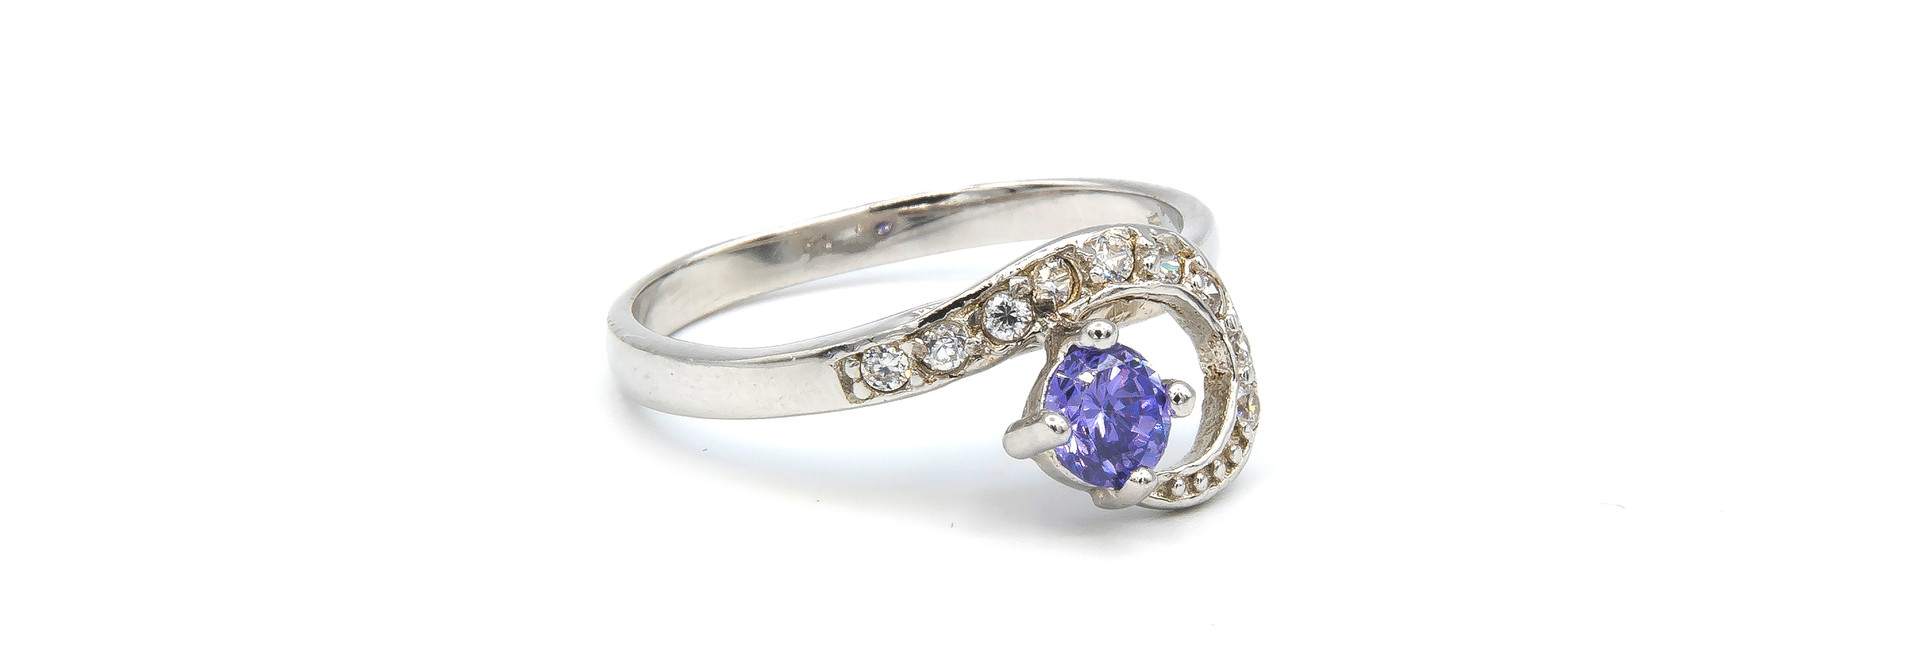 Ring verlovingsring lusje ingezet met zirkonia's en paarse steen zilver